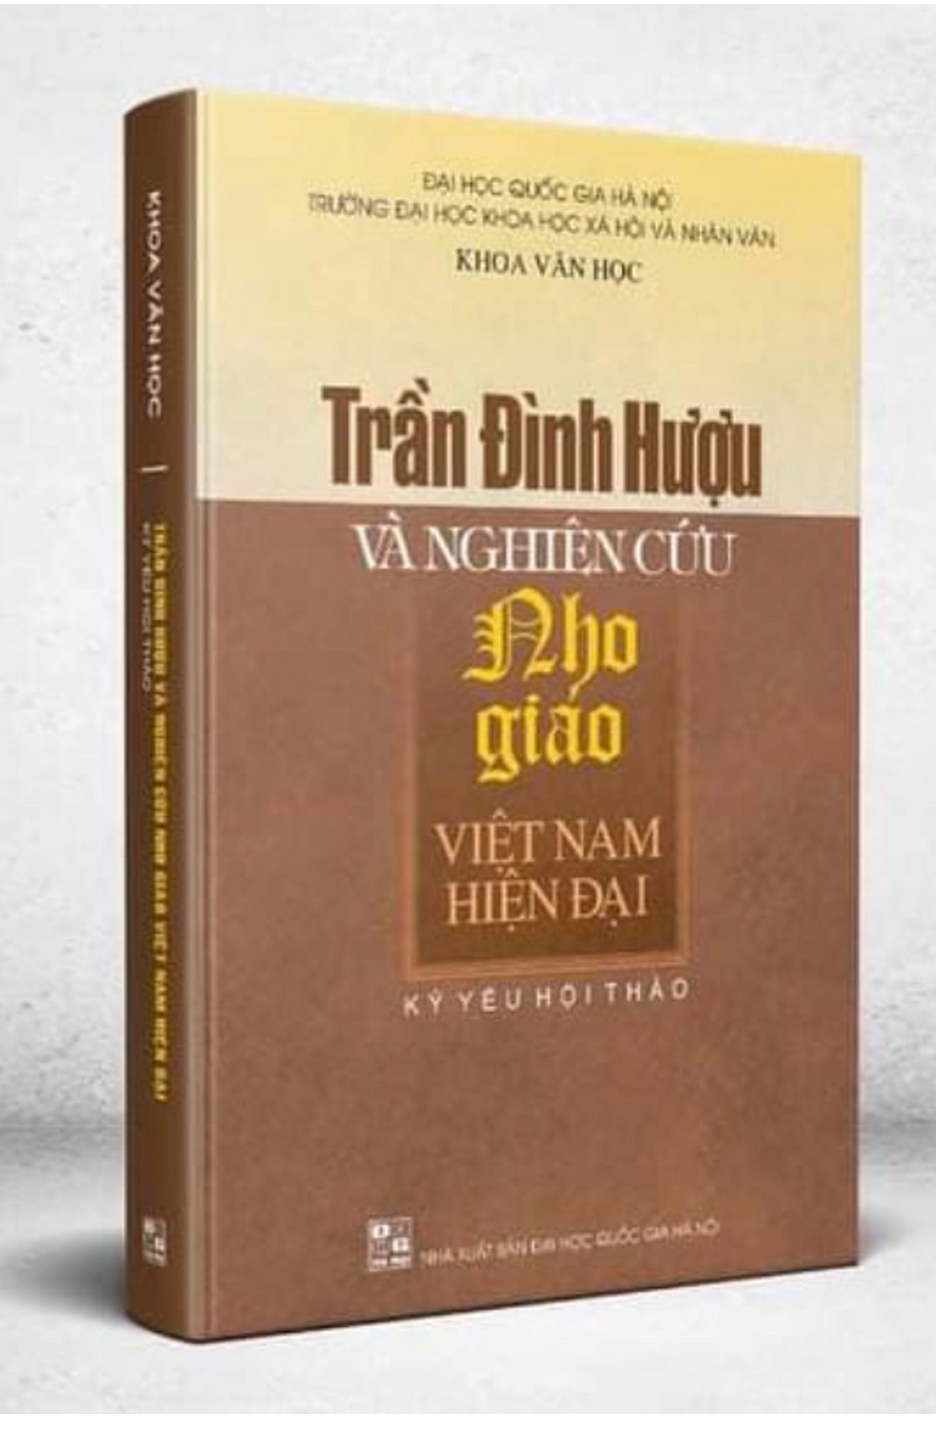 Trần Đình Hượu và nghiên cứu Nho giáo Việt Nam hiện đại.